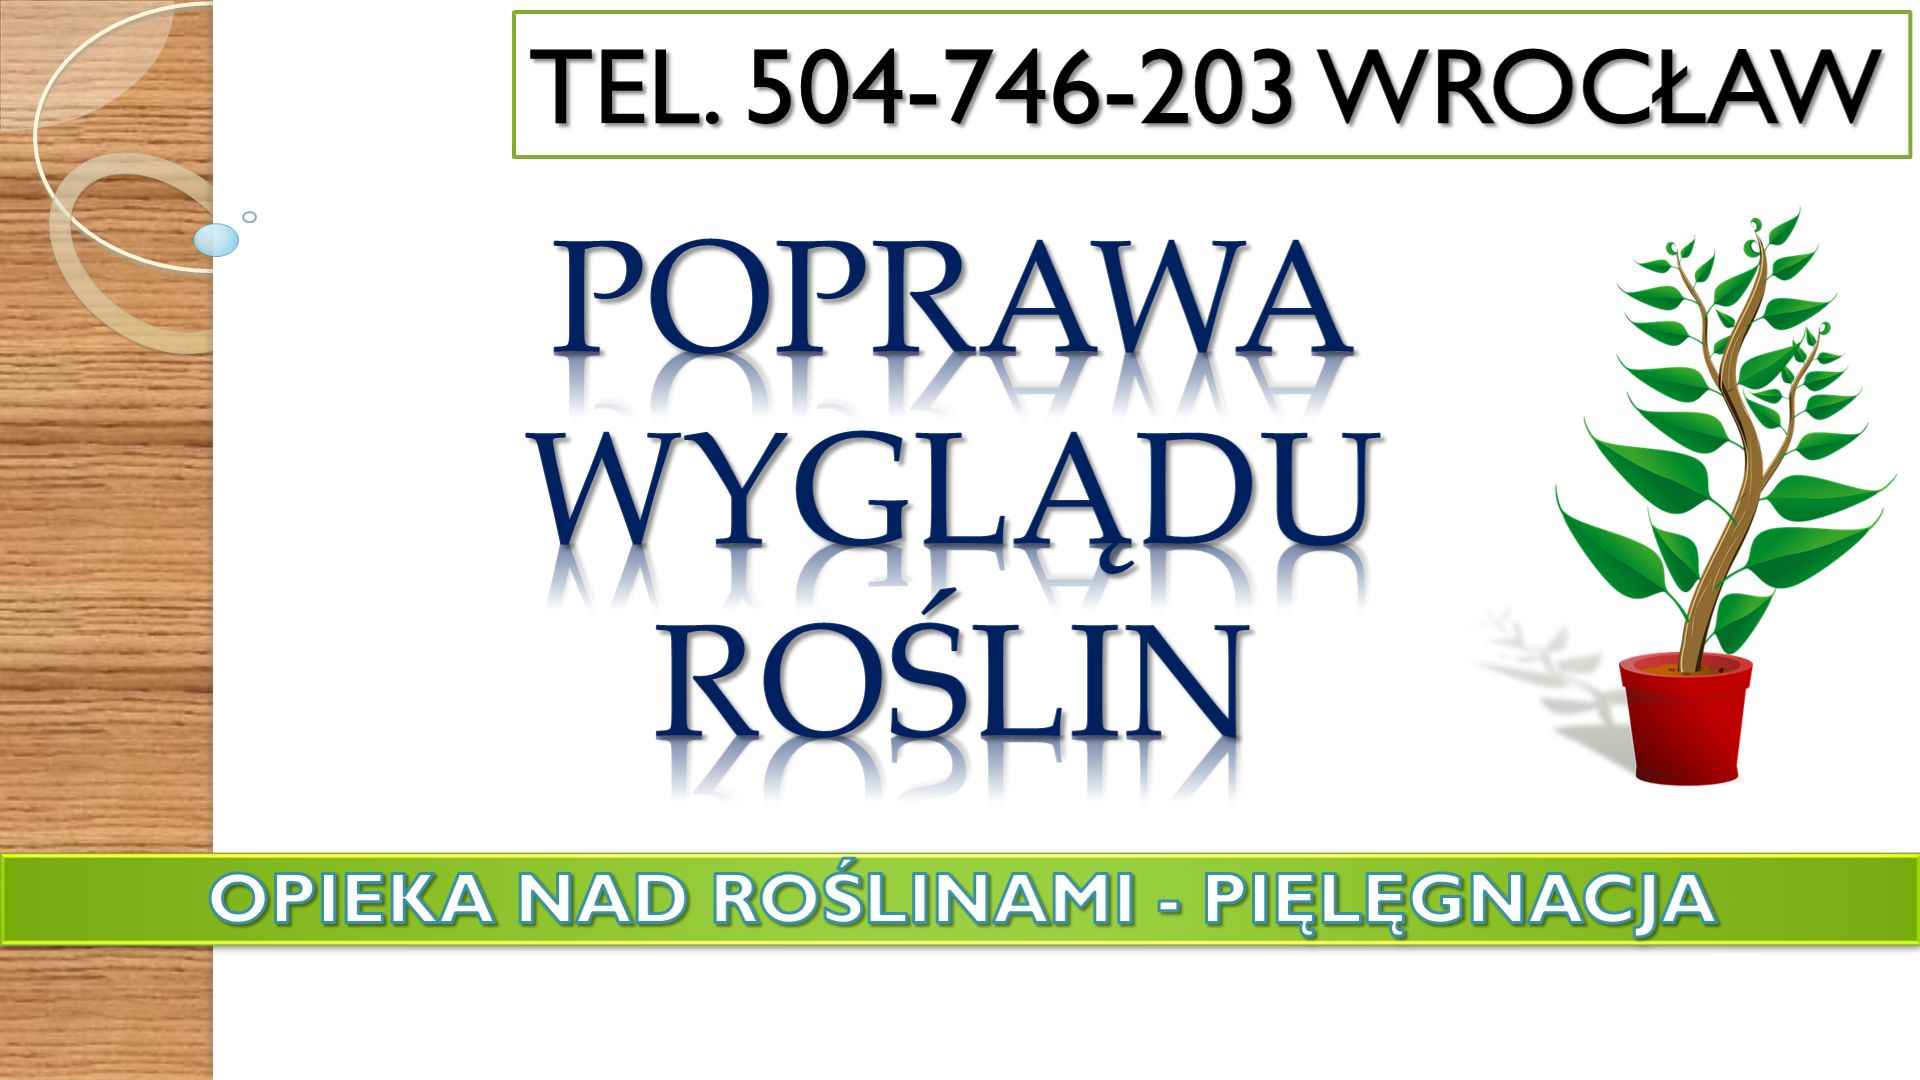 Opieka nad roślinami w biurze, Wrocław, tel 504-746-203, cennik usługi Psie Pole - zdjęcie 7